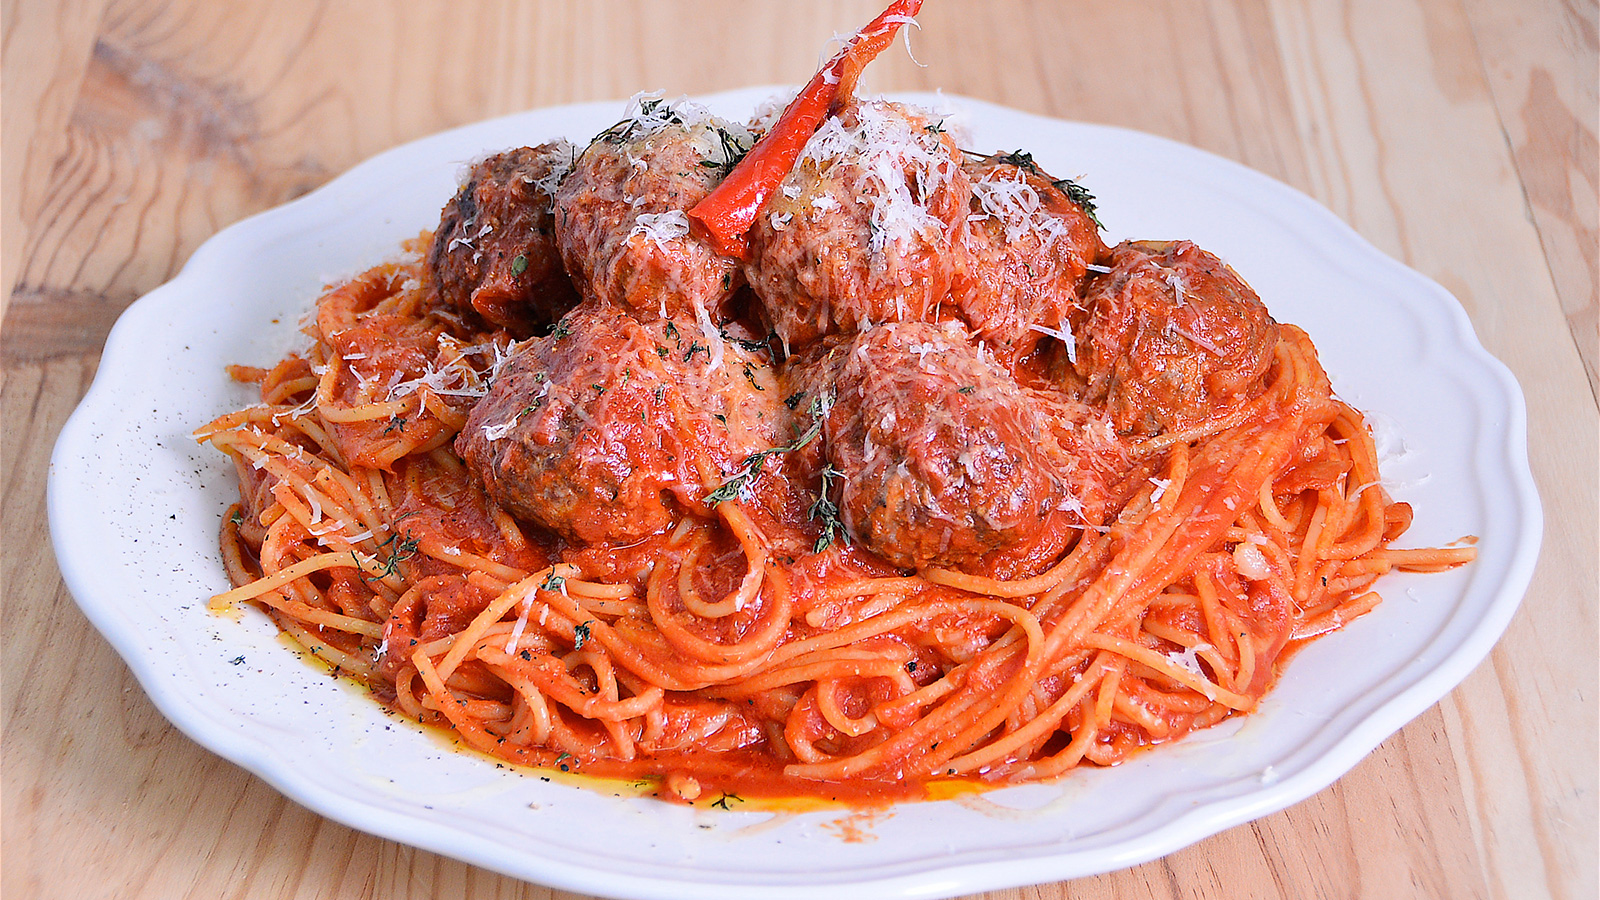 Spaghetti con salsa de tomate y albóndigas estilo italianos en Estados  Unidos - Nicola Poltronieri - Receta - Canal Cocina